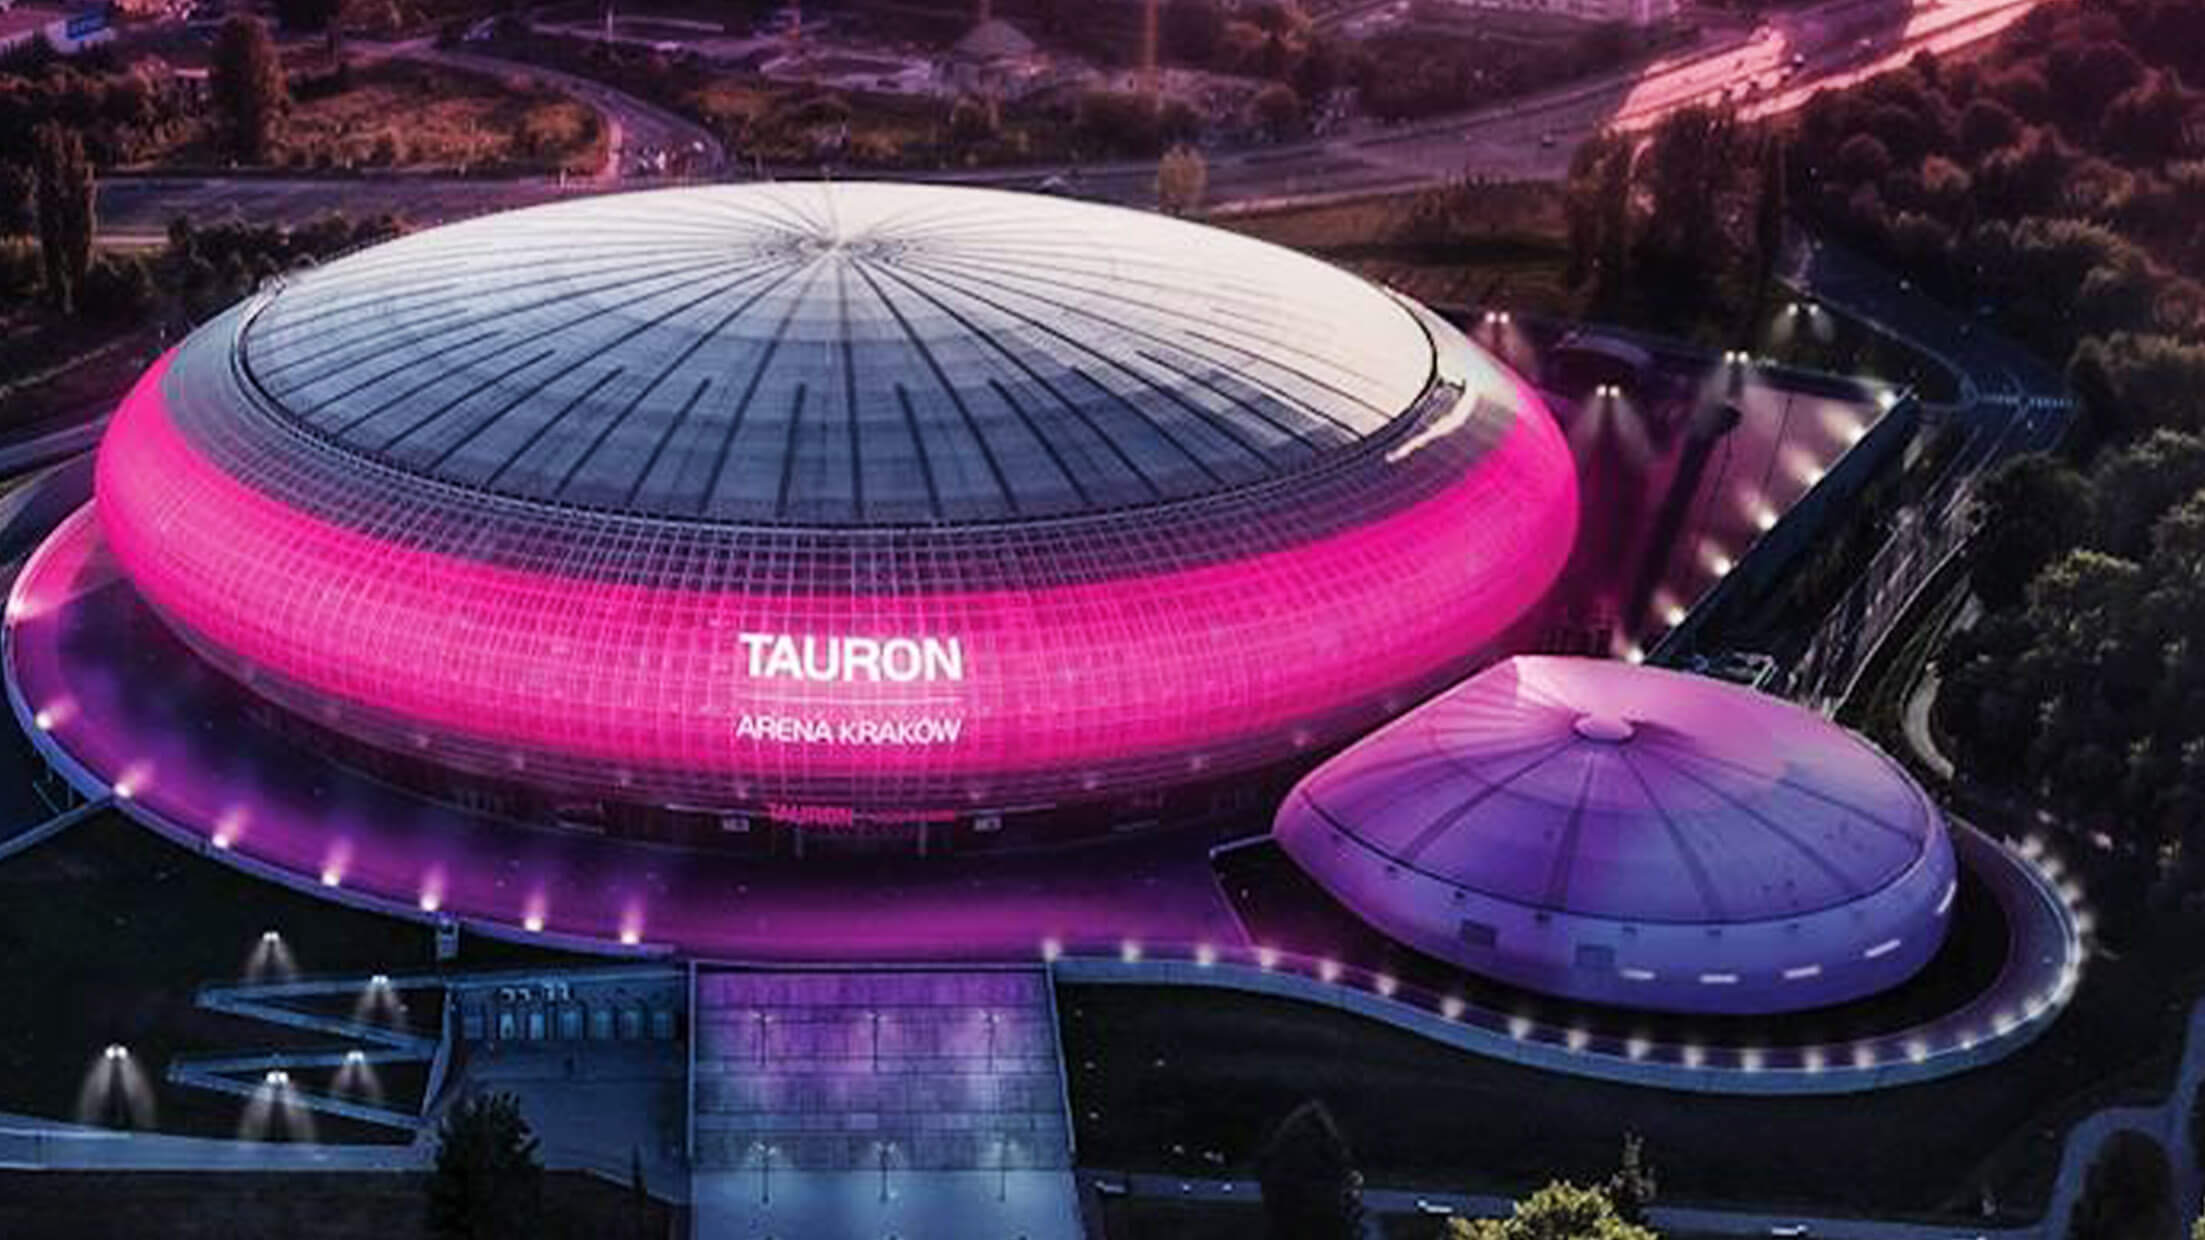 超巨大UFO！？ポーランドのアリーナ「Tauron Arena Kraków」の「ウィンドウビジョン」